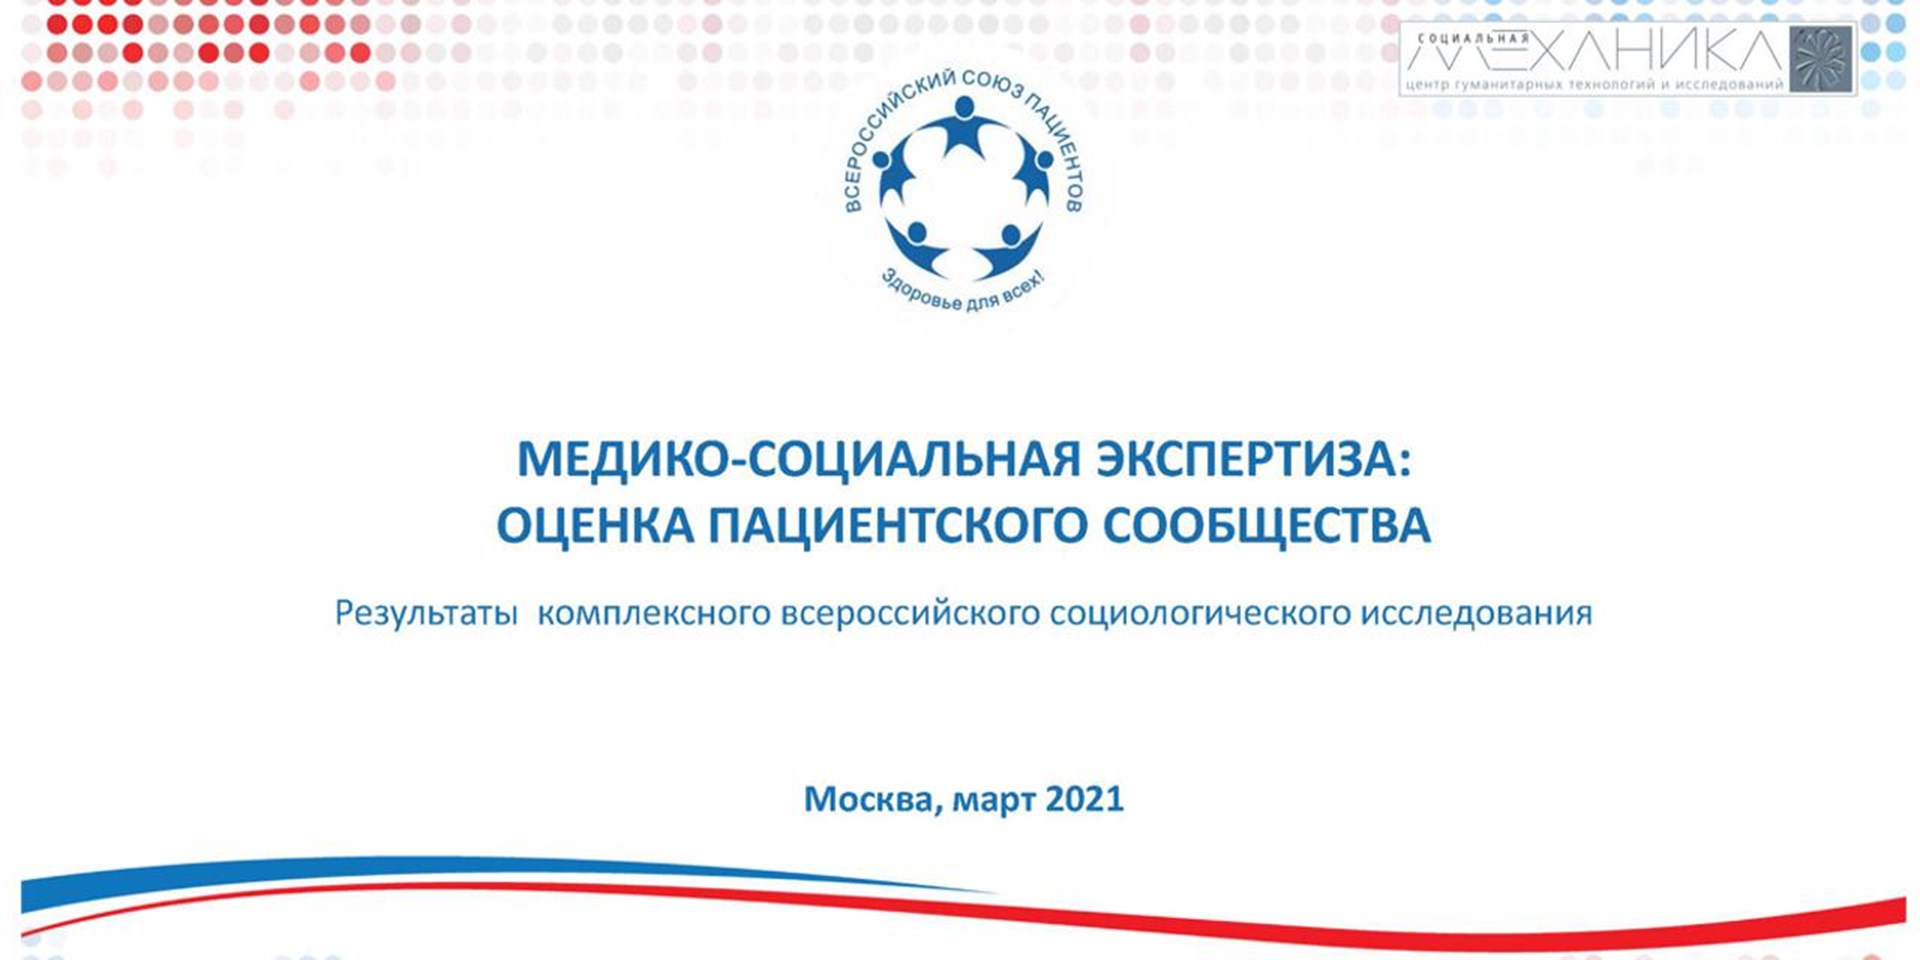 Москва. ВСП оценил изменения в системе медико-социальной экспертизы в период пандемии 